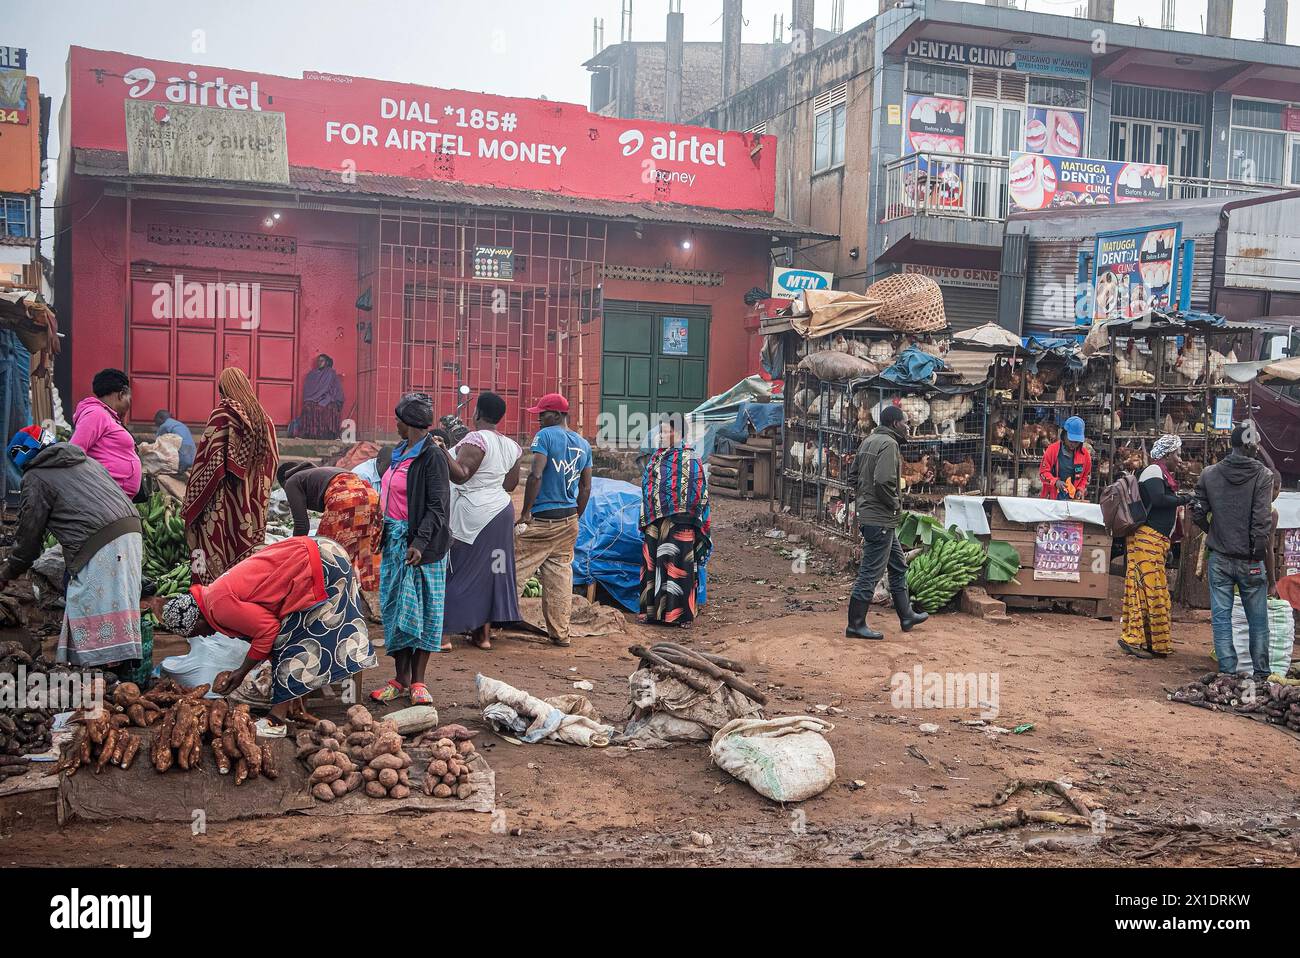 Ein lebhafter Straßenmarkt in Kampala, Uganda, mit bunt gekleideten Händlern, die Obst, Gemüse, Geflügel und mehr verkaufen. Eine Zahnklinik und ein Telefon Stockfoto